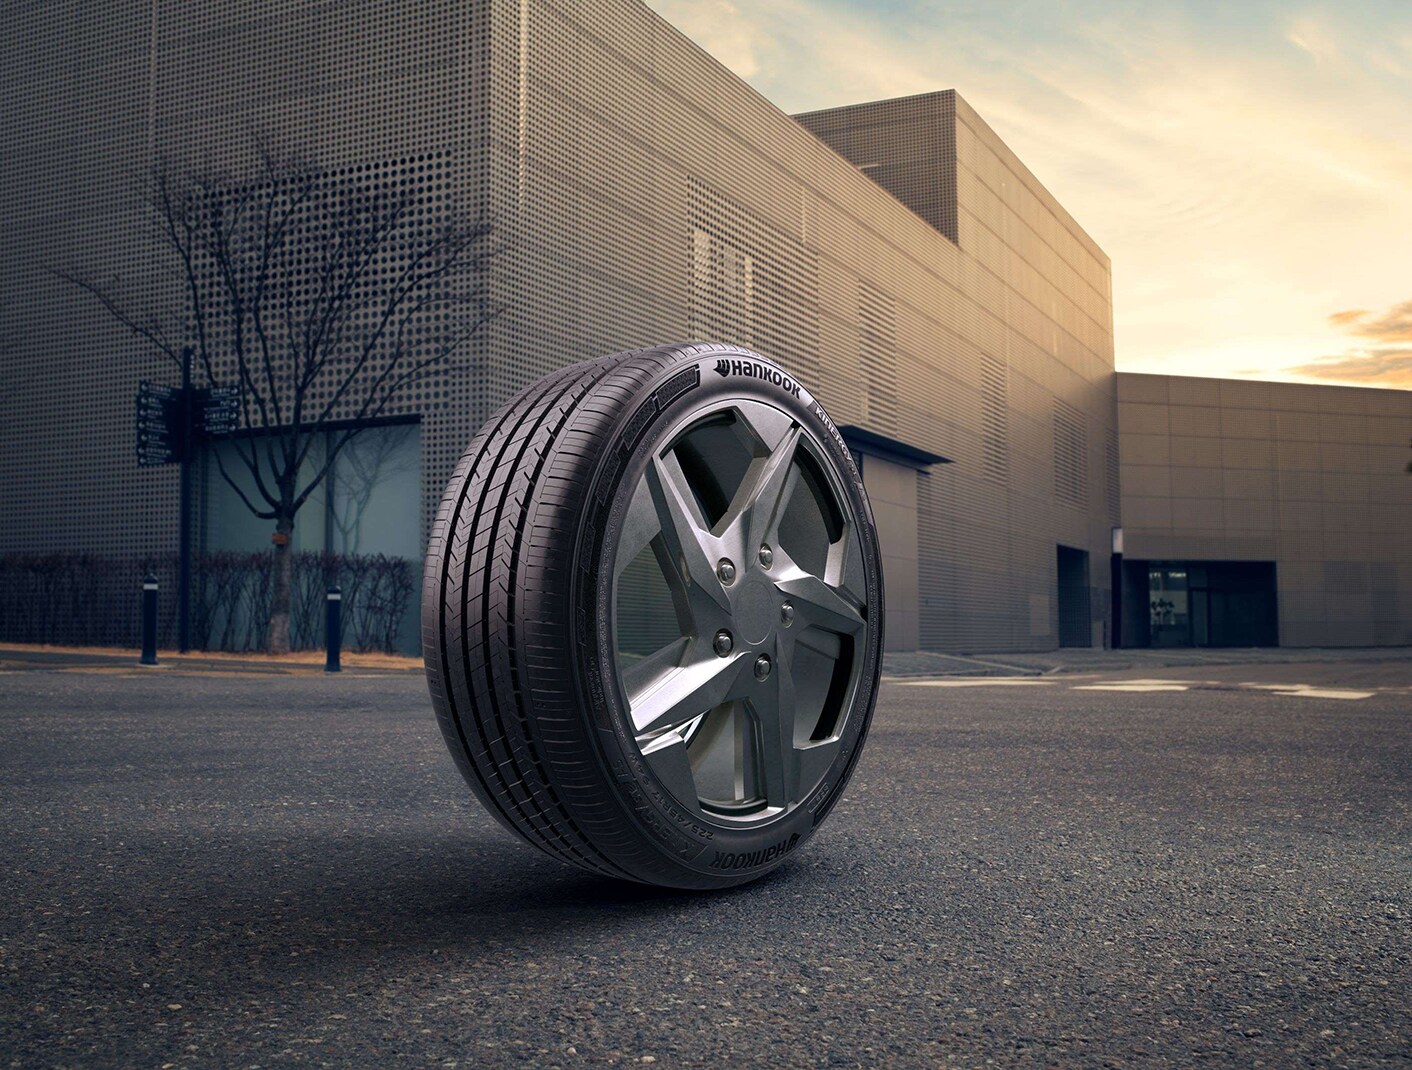 한국타이어, 사계절용 밸런스 타이어 ‘키너지 ST AS’ 국내 출시